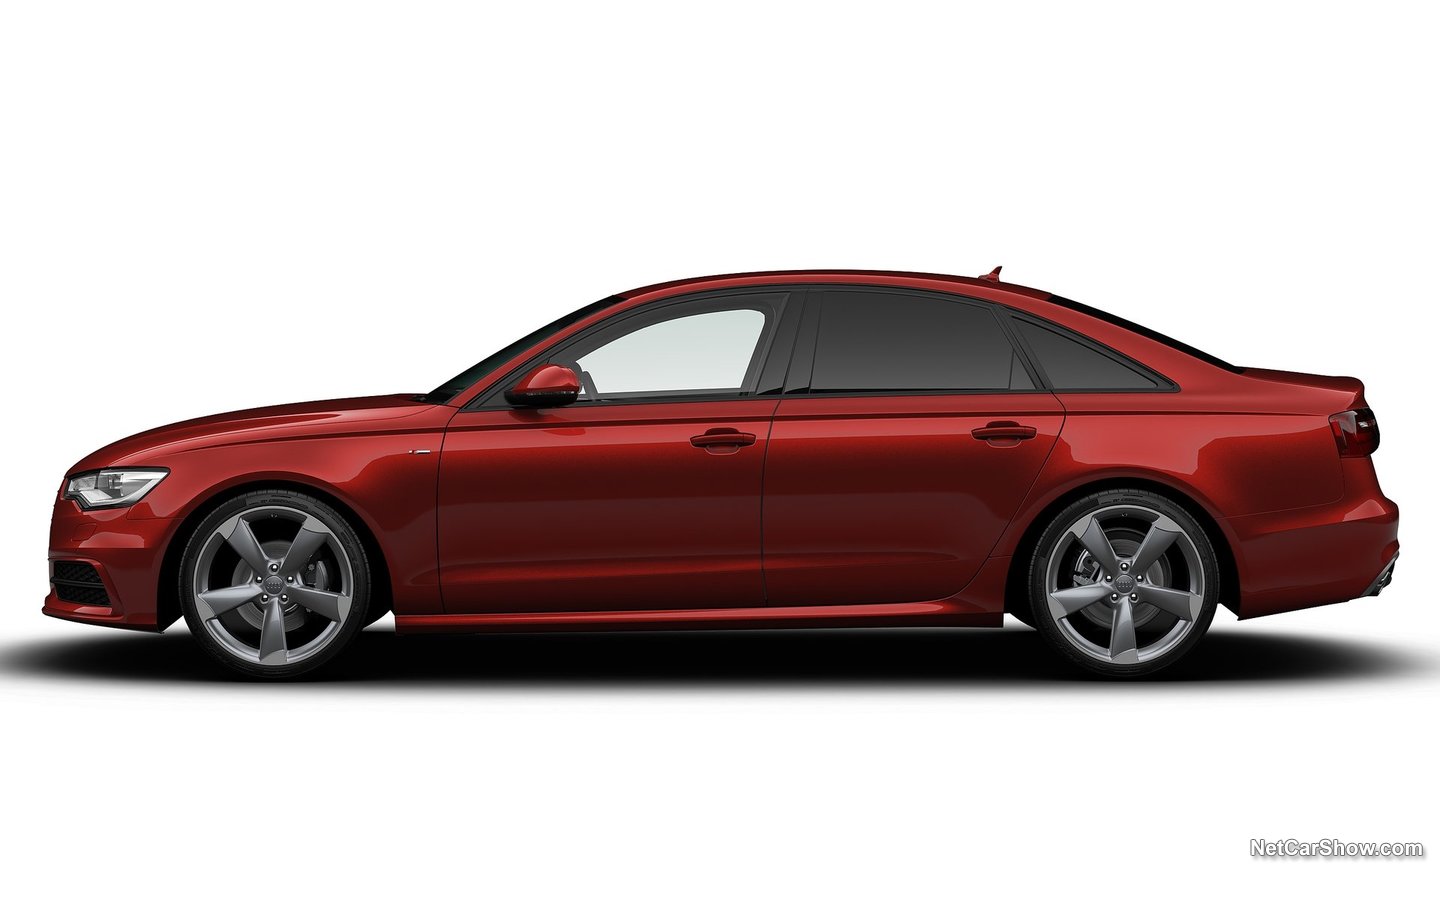 Audi A6 Black Edition 2013 9f3b546a